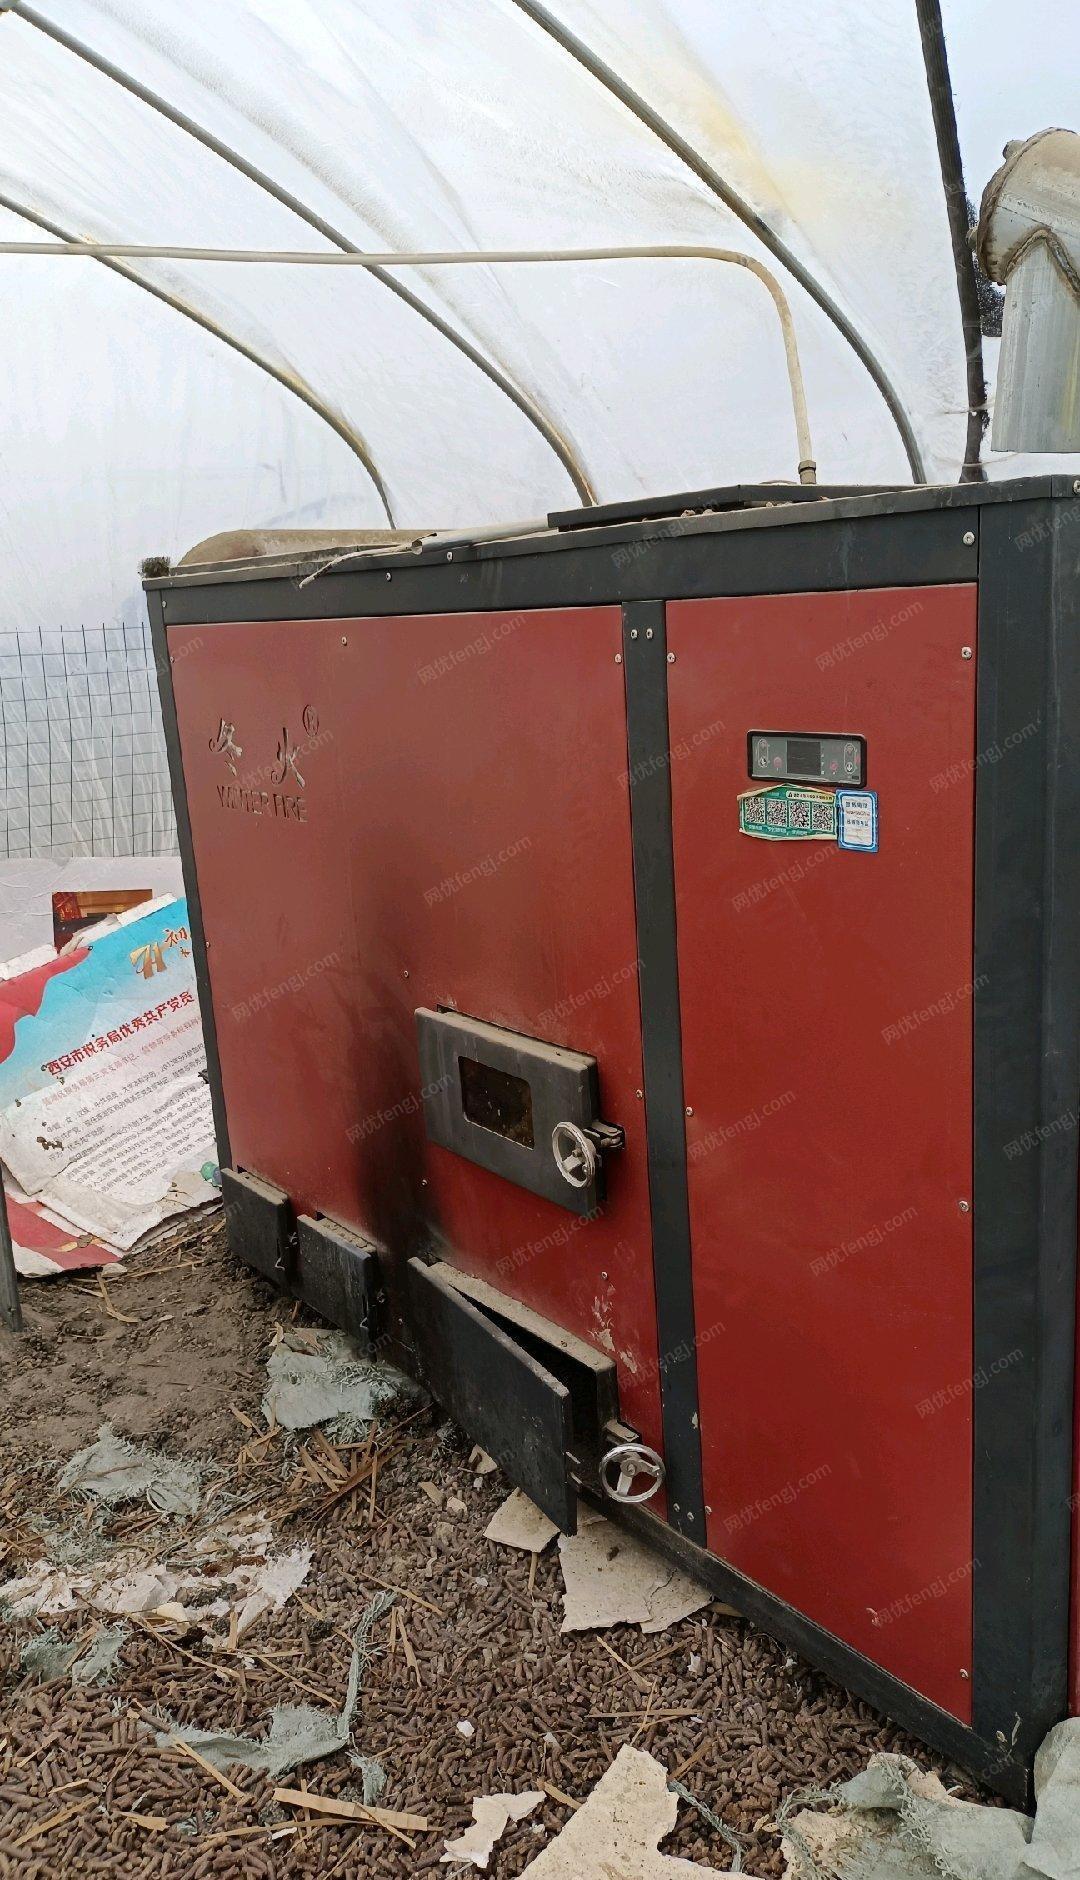 陕西西安锅炉购于2019年9月只用了一个冬季。当时购买是6.4万，现5万元出售